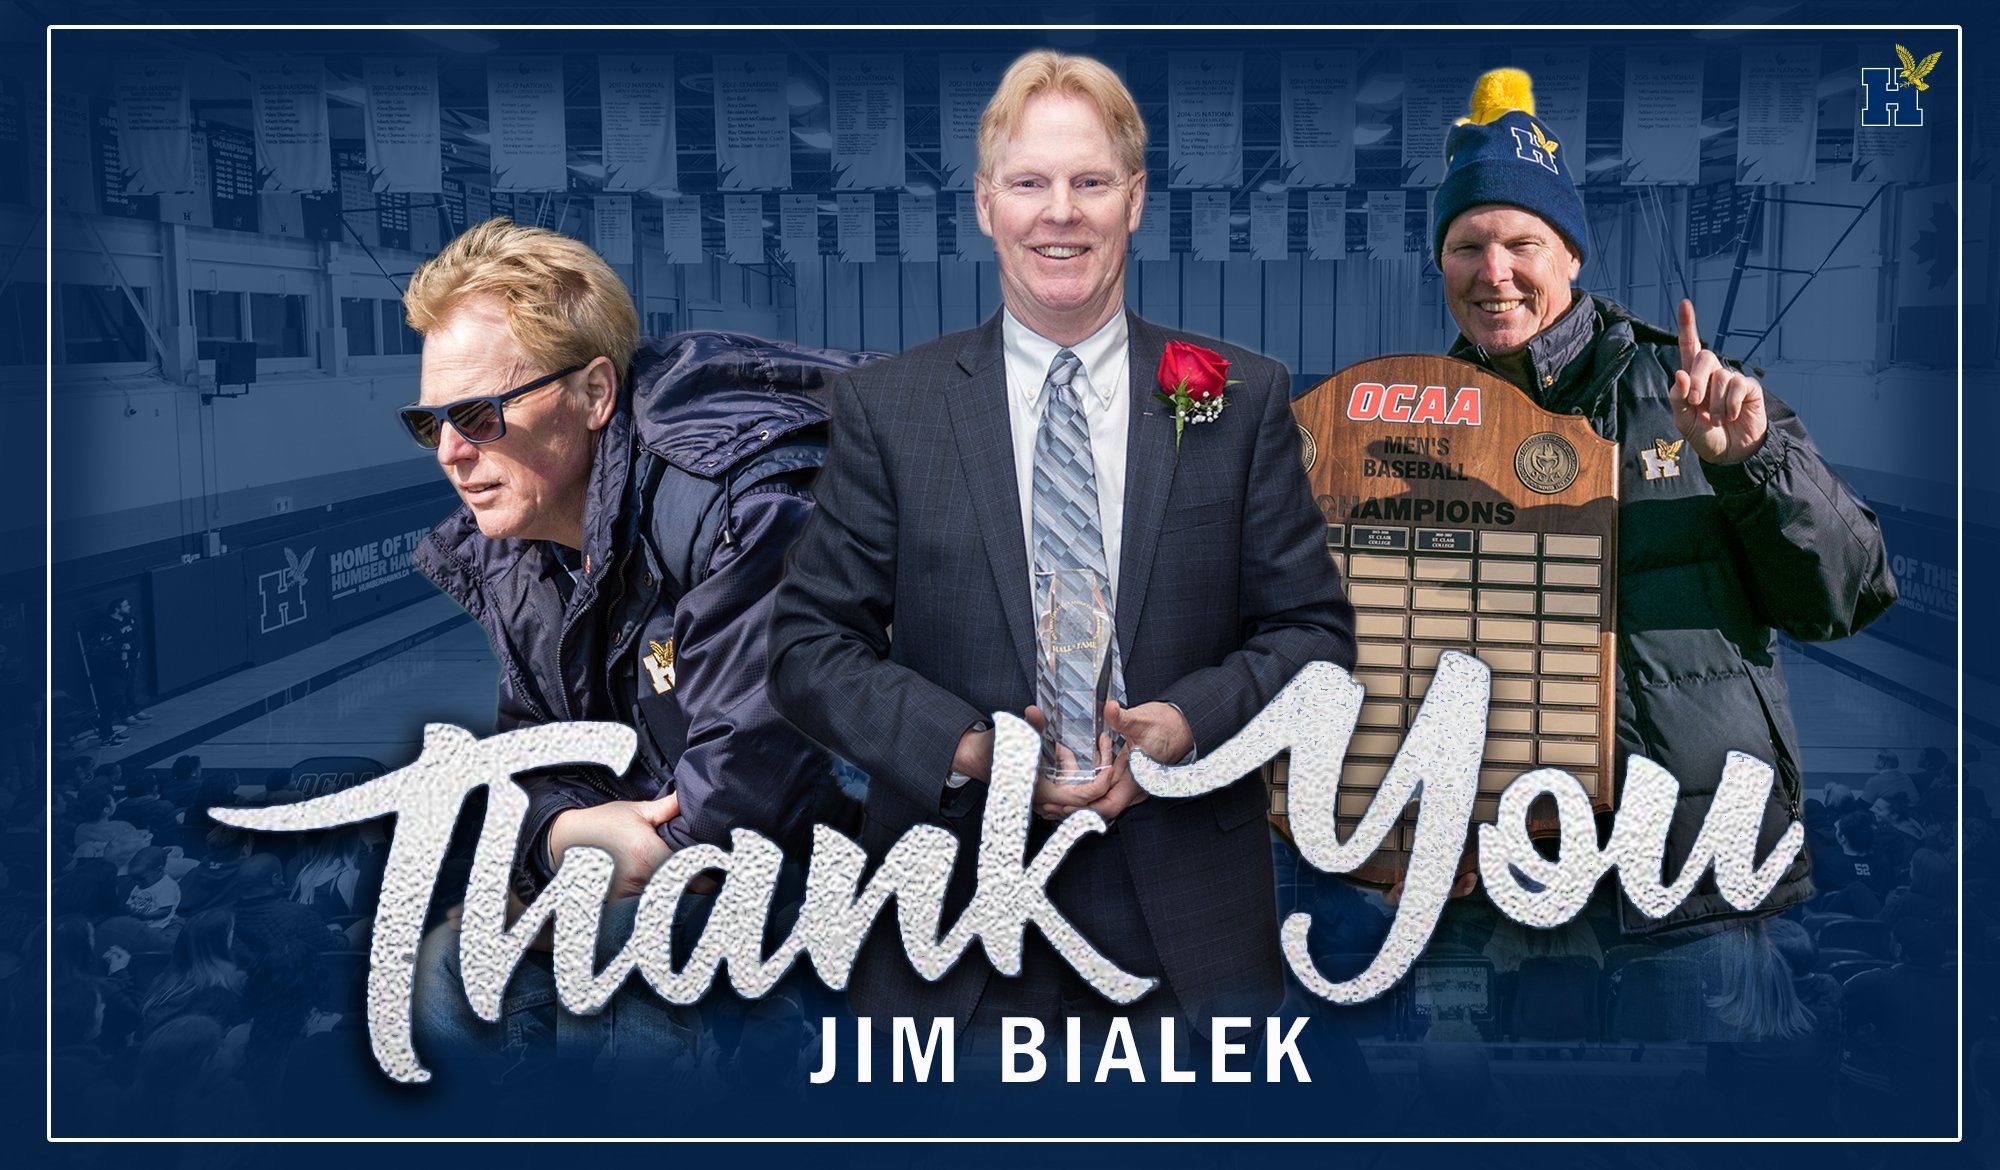 Thank you Jim Bialek